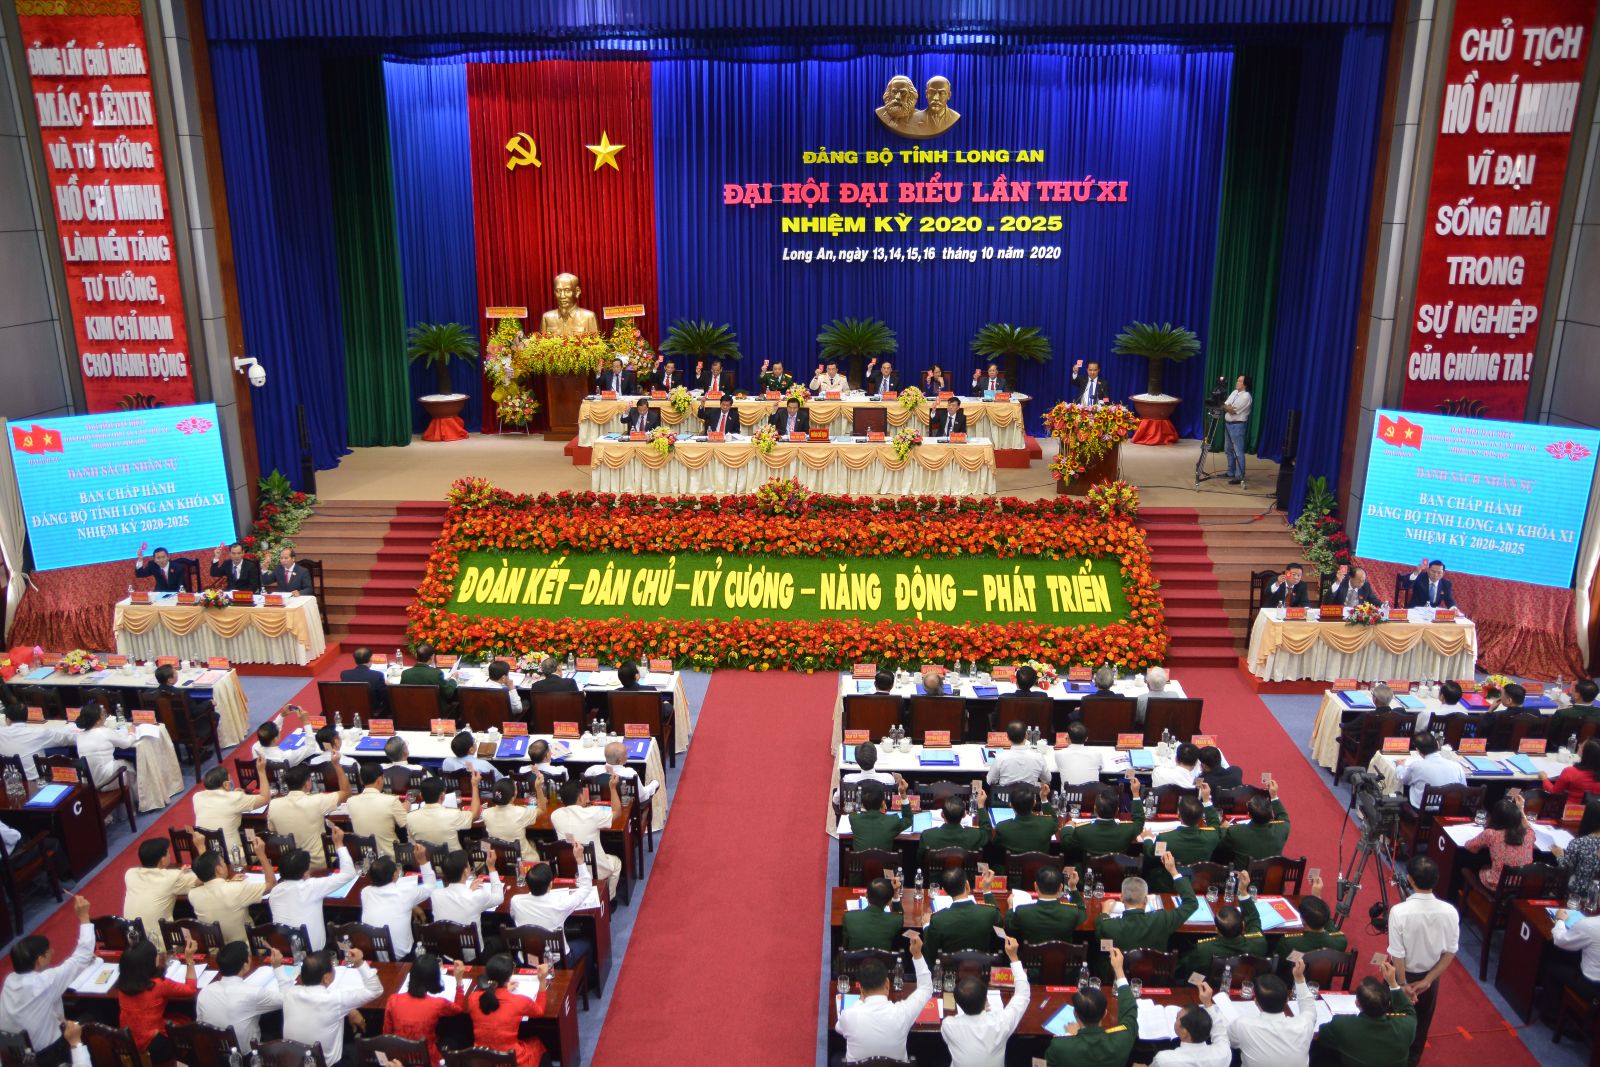 Nhiệt liệt chào mừng Đại hội Đảng bộ tỉnh Long An khóa XI, nhiệm kỳ 2020 - 2025